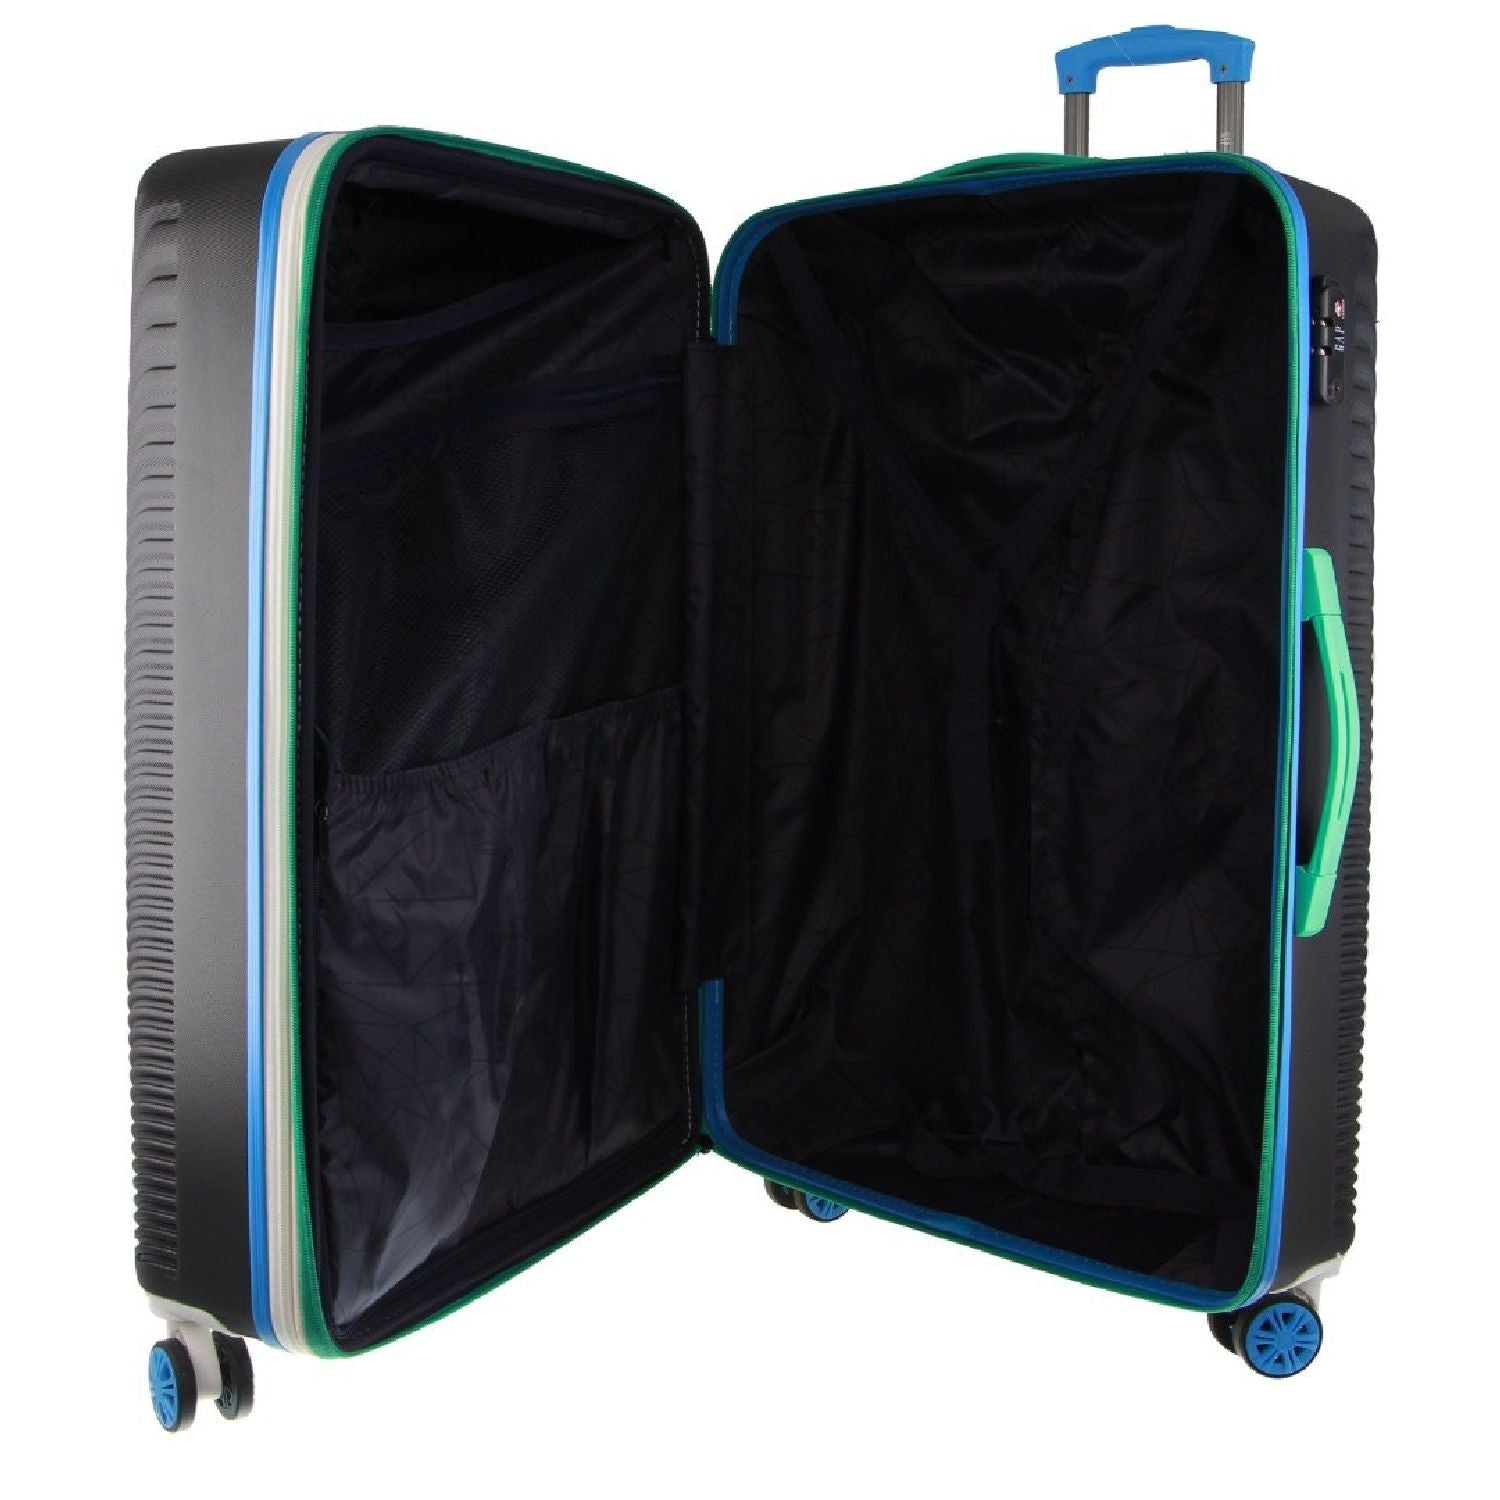 GAP 4 Wheel Hardcase Suitcase - Large Black - Expandable